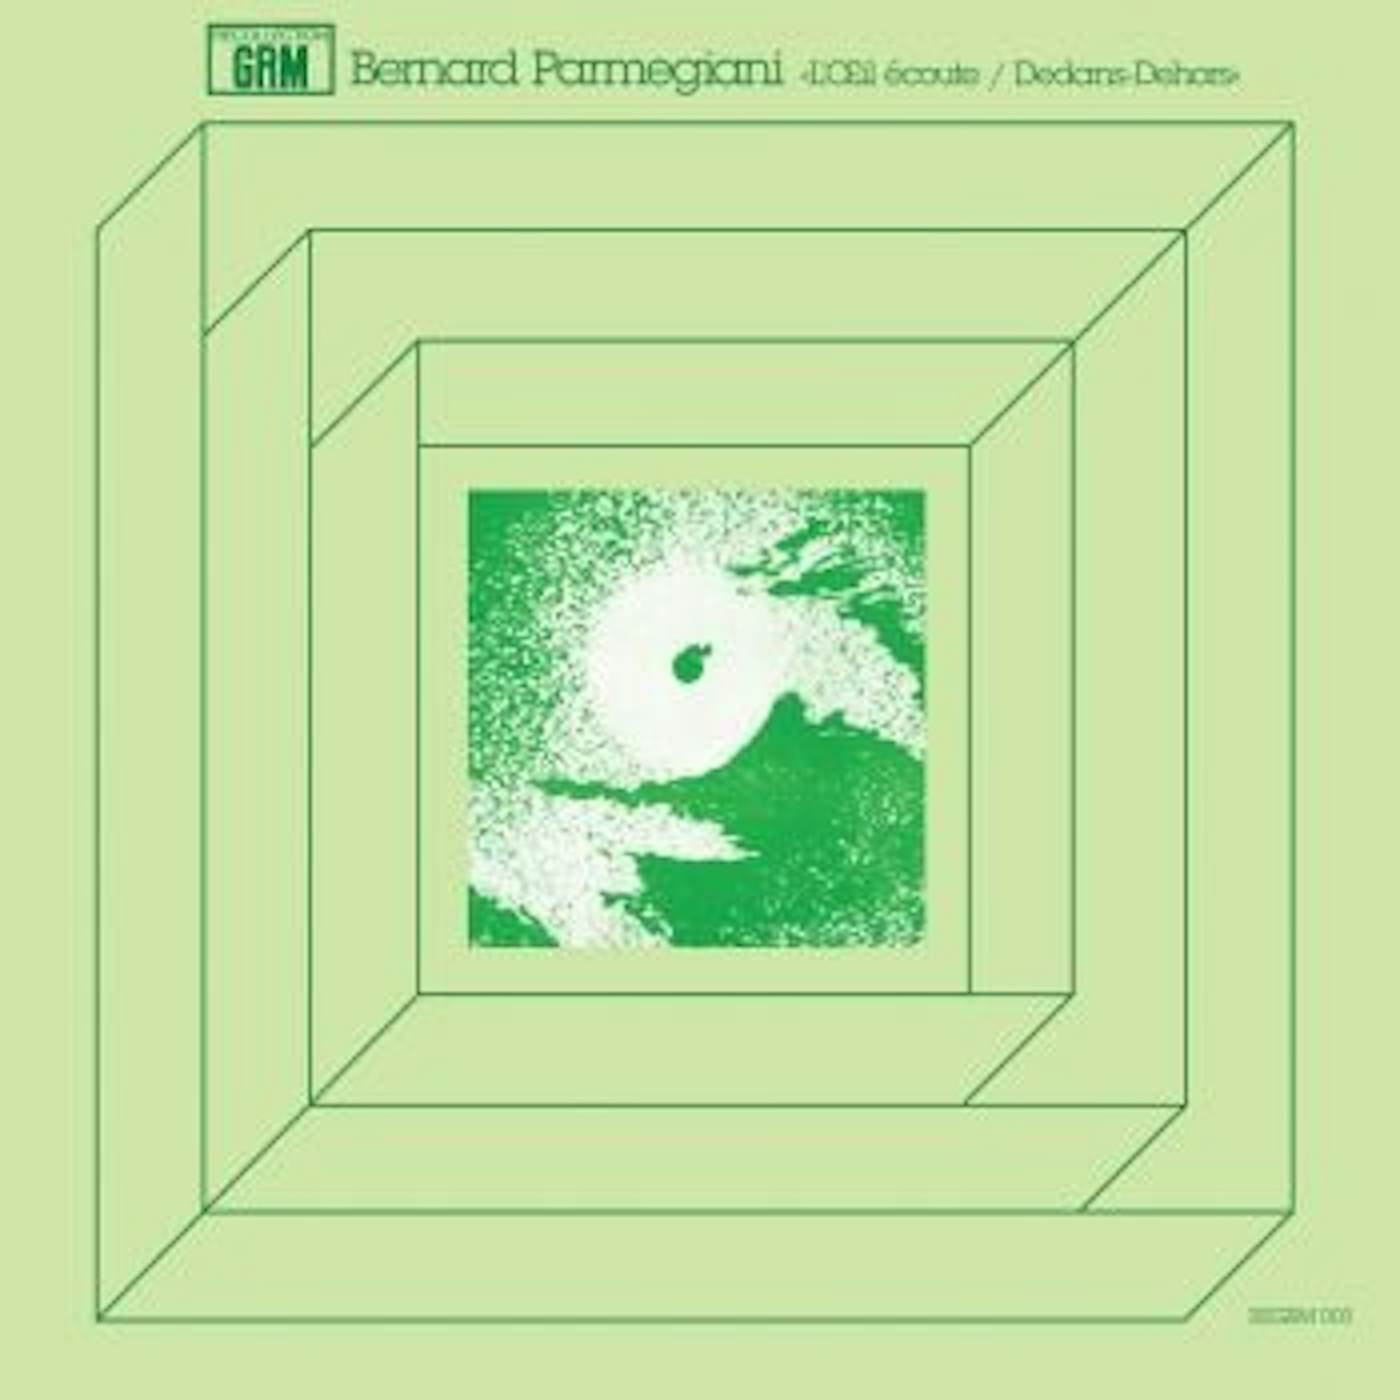 Bernard Parmegiani L'OEIL ECOUTE / DEDANS-DEHORS Vinyl Record